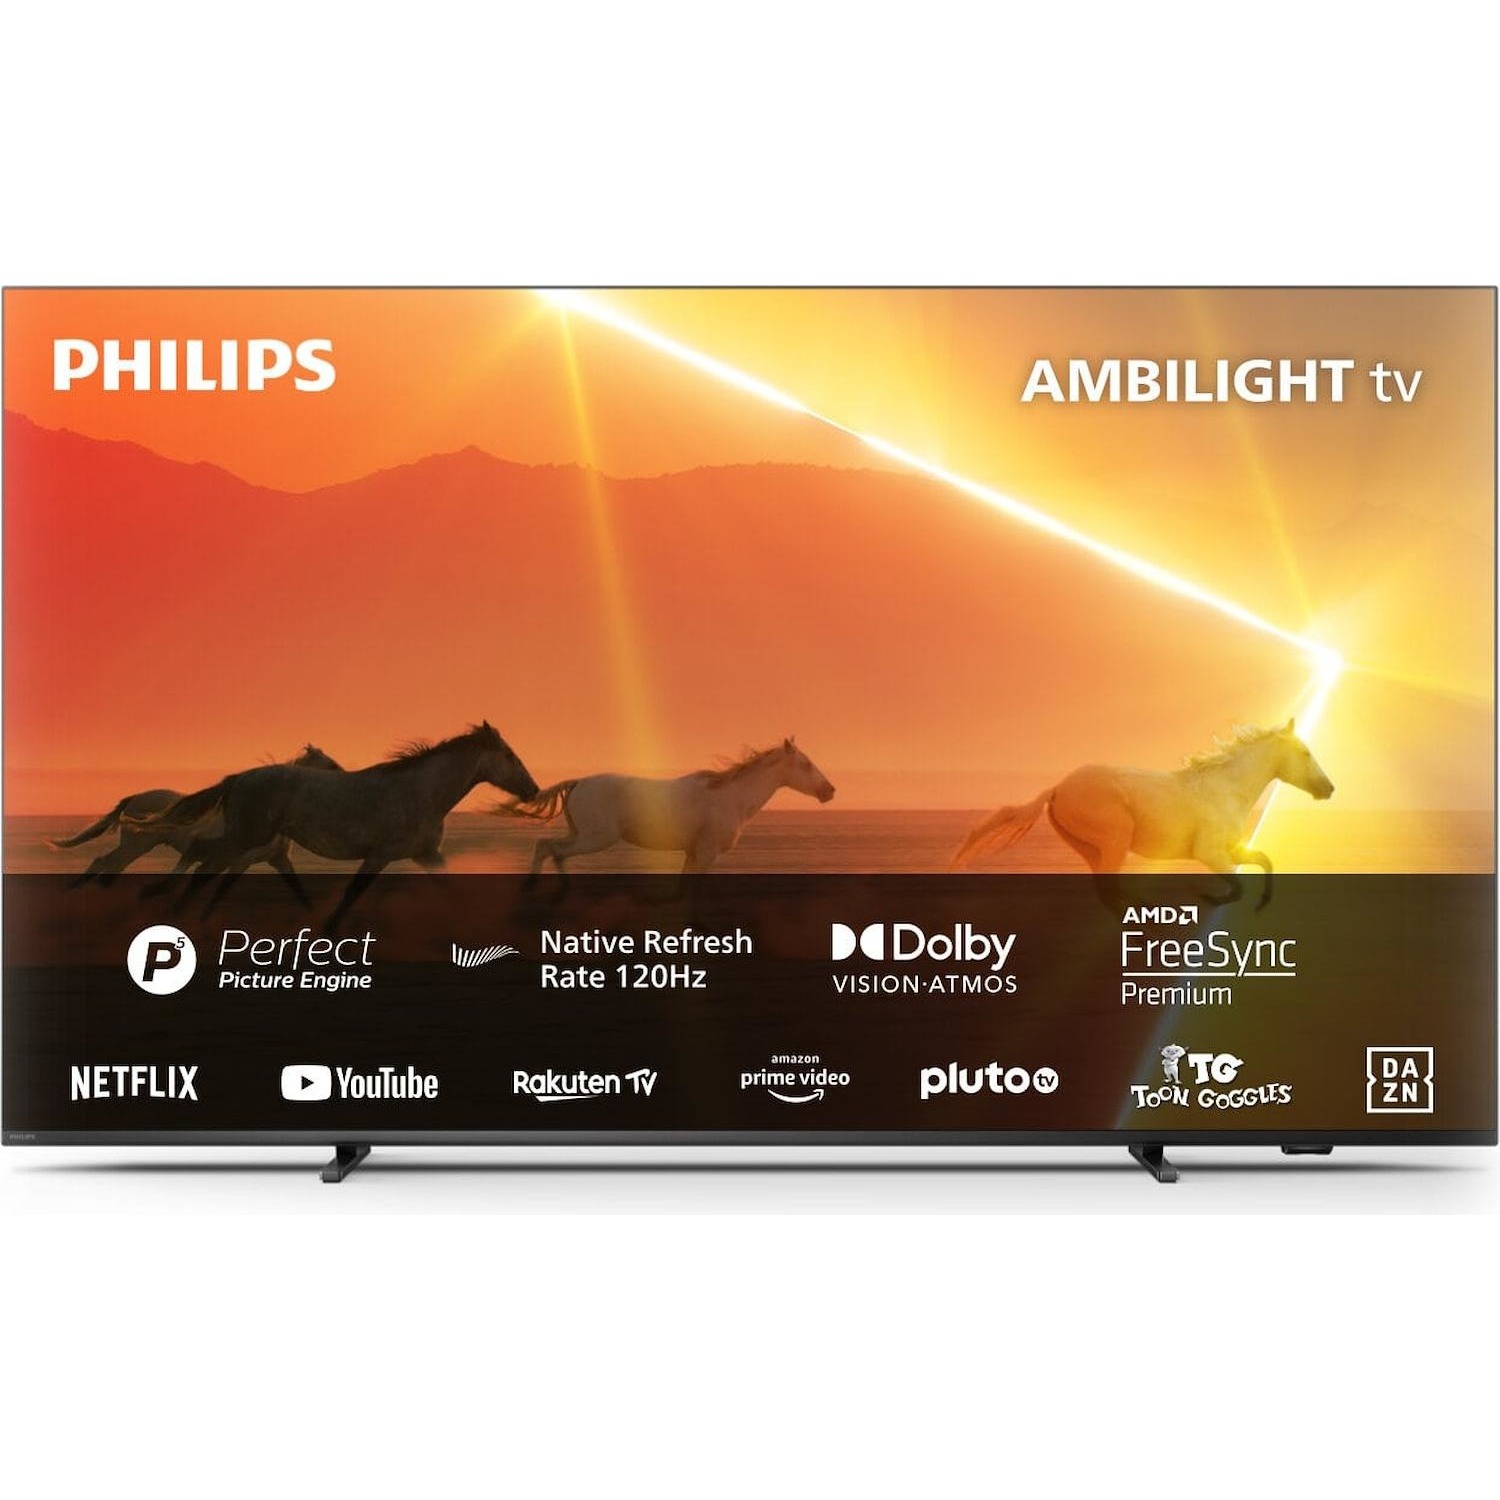 Immagine per TV MINI LED Smart 4K UHD Philips 65PML9008 Ambilight da DIMOStore